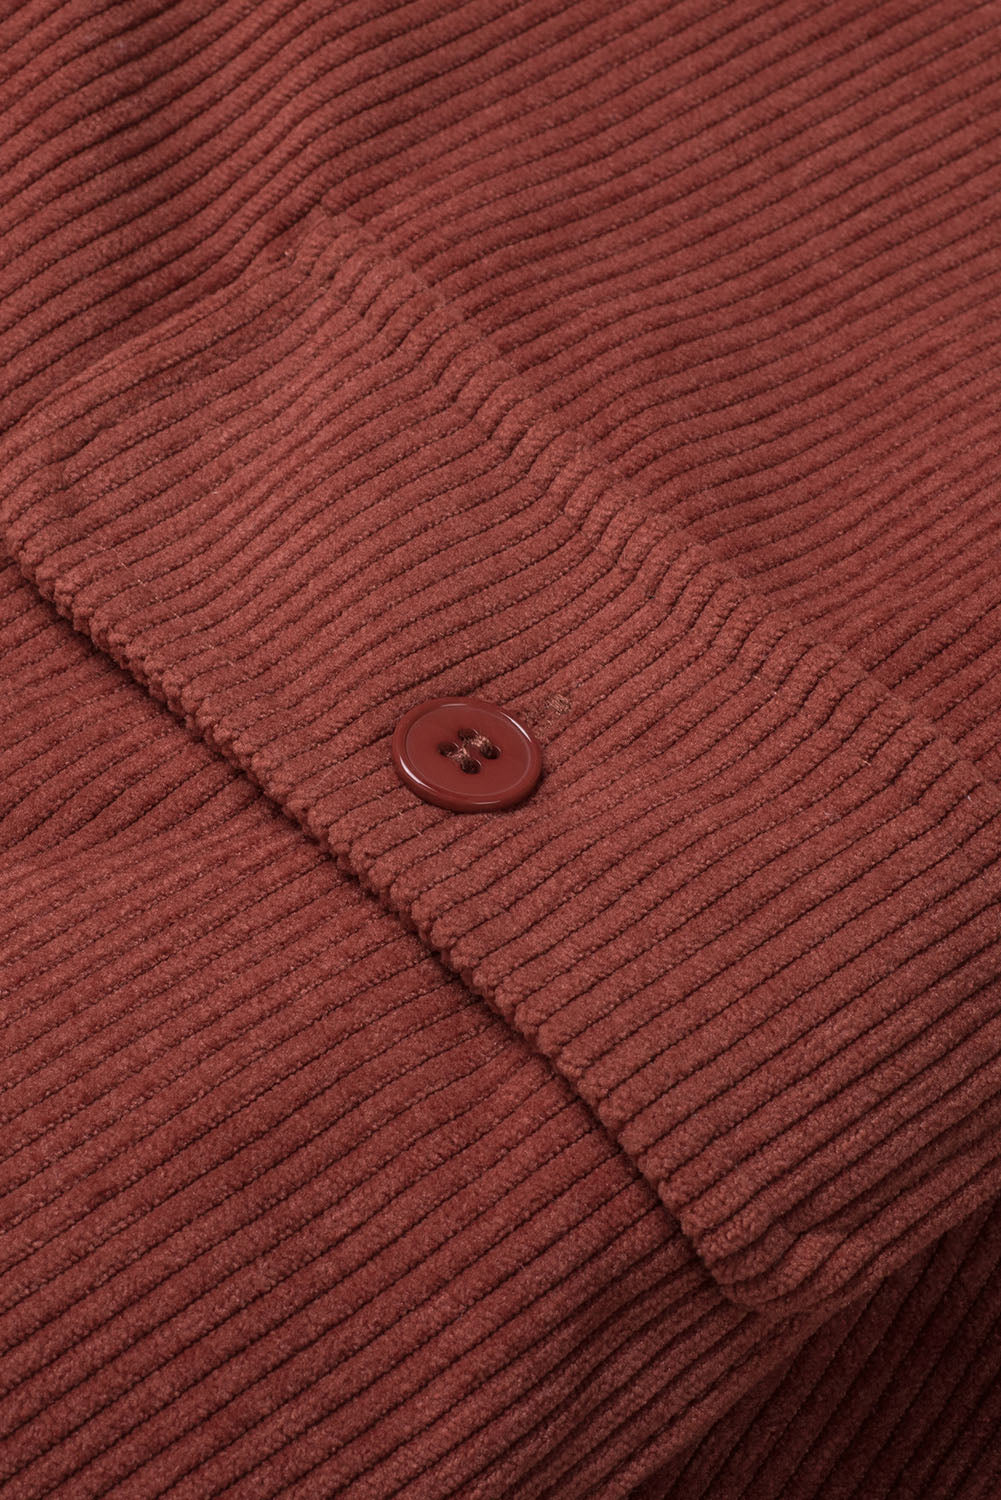 Plaid Print Buttoned Corduroy Reversible Jacket